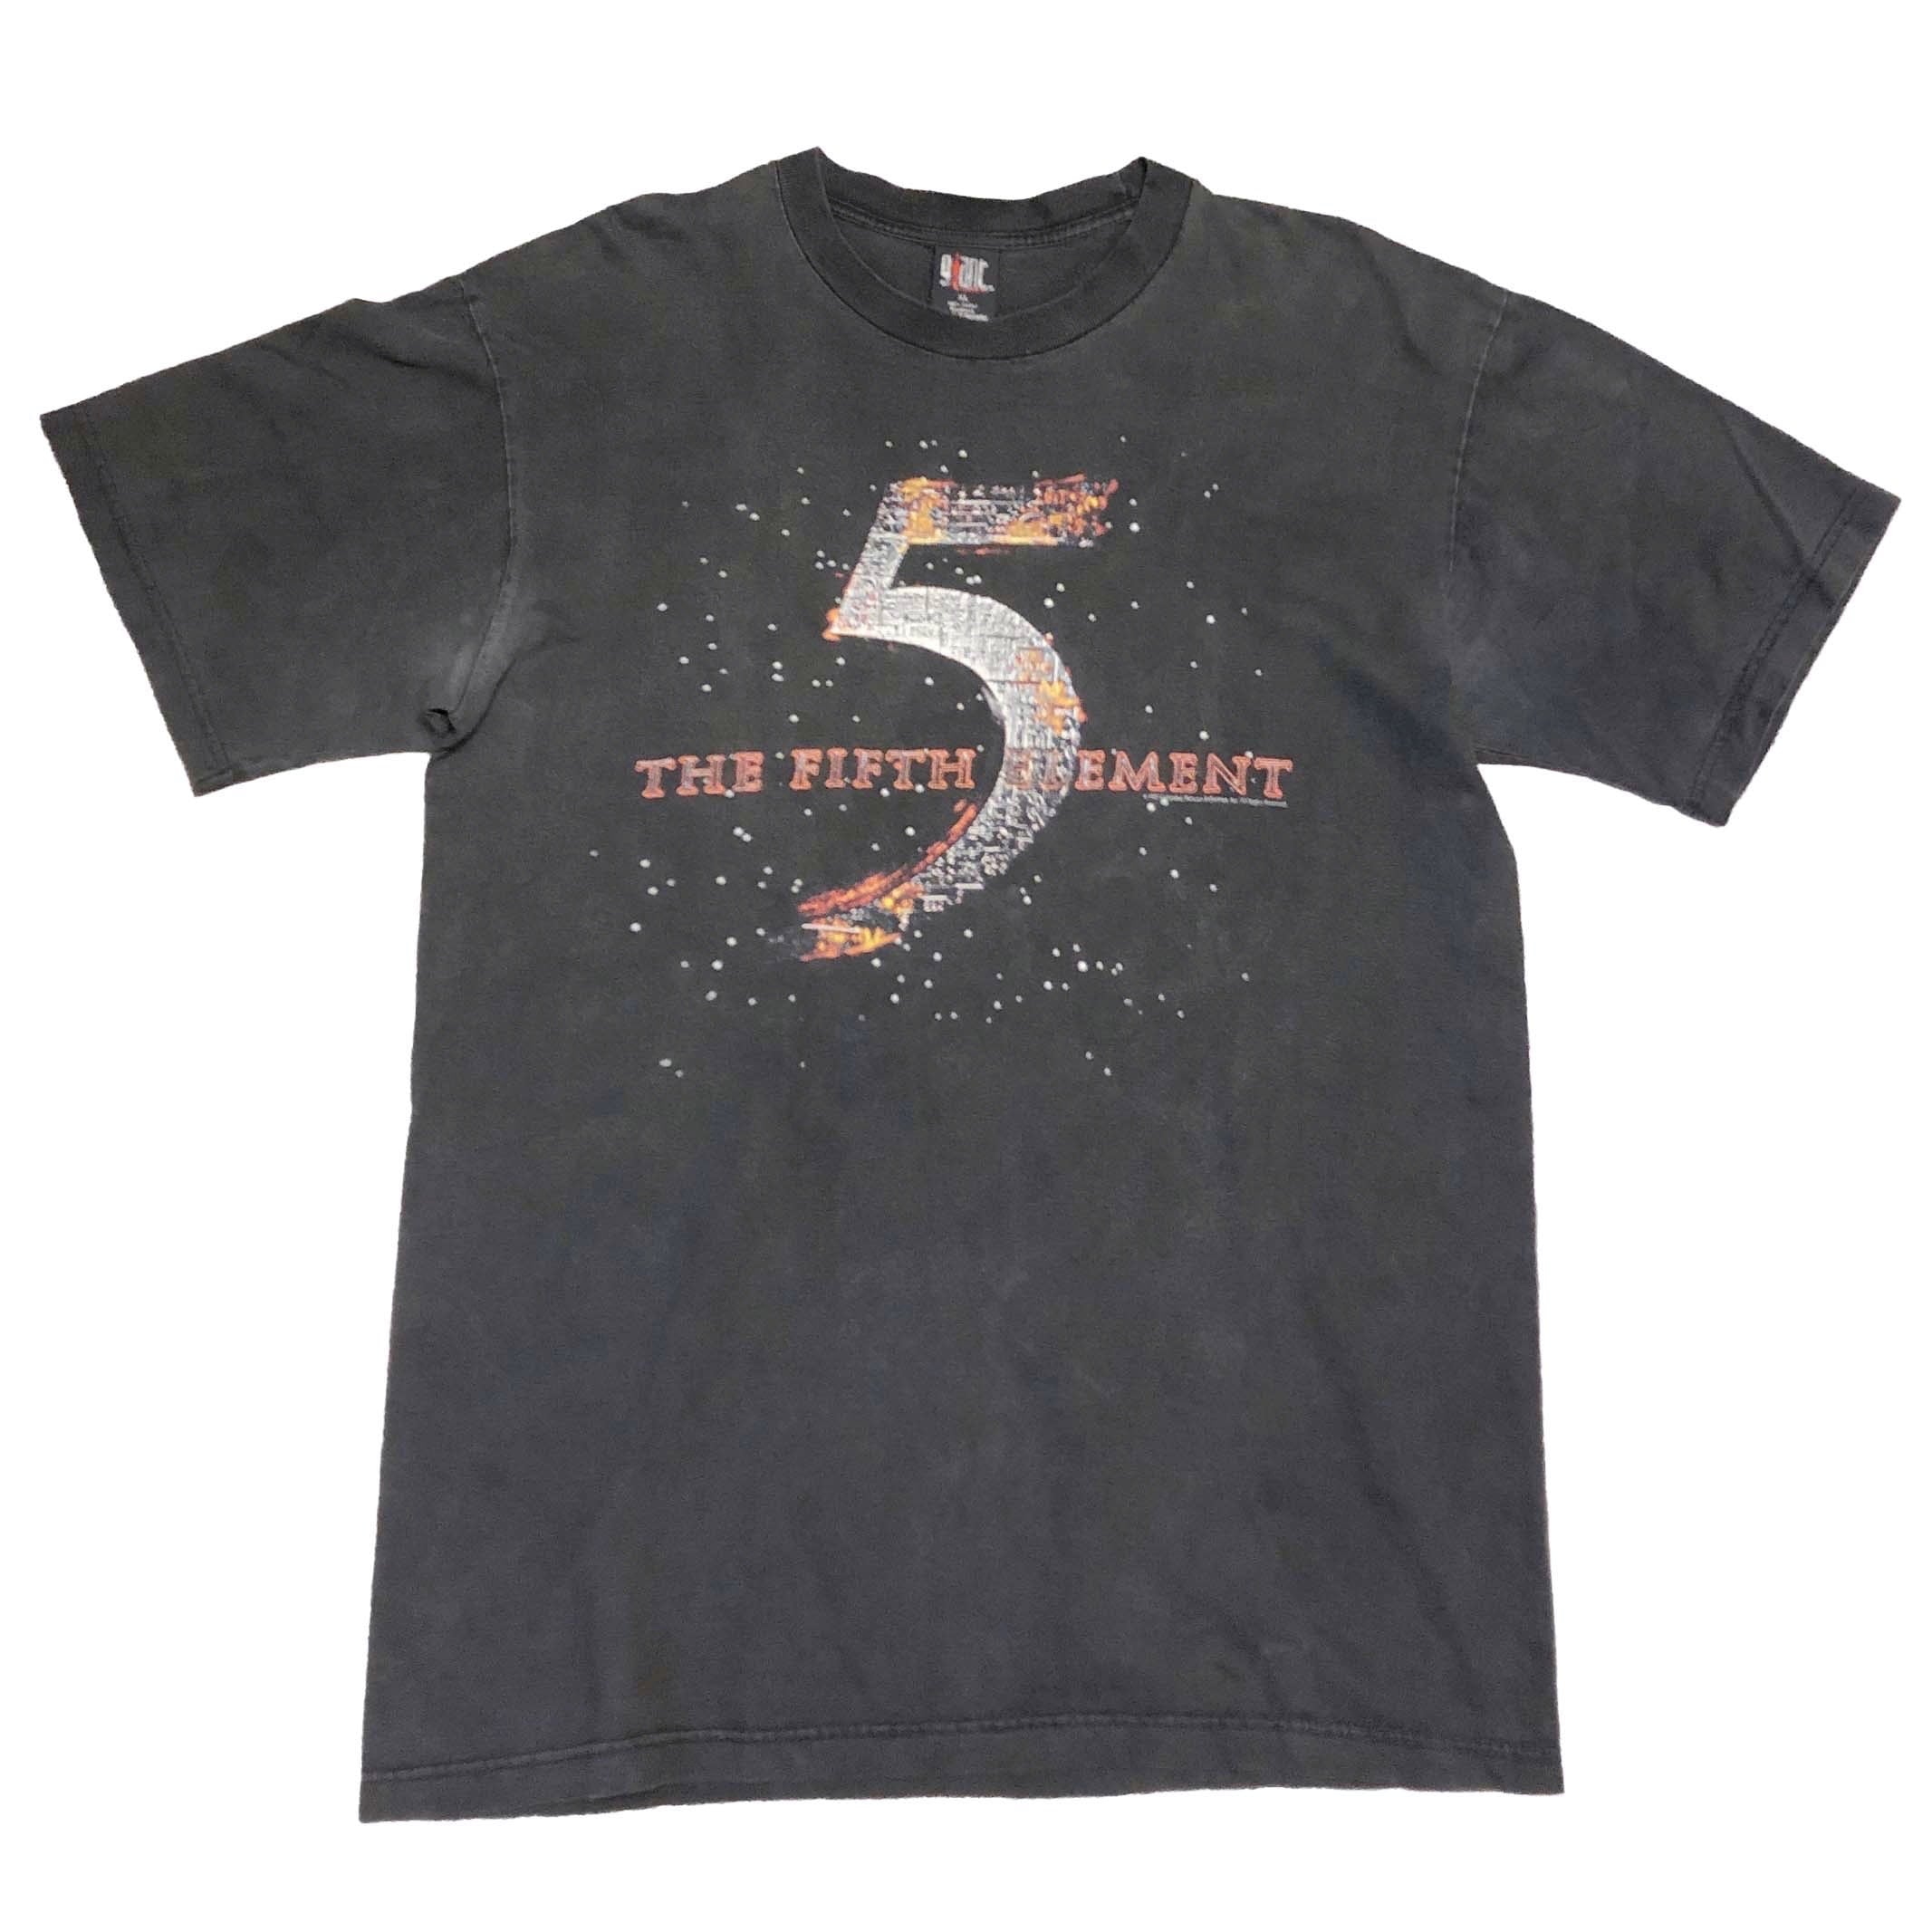 Fifth element フィフスエレメント Tシャツ